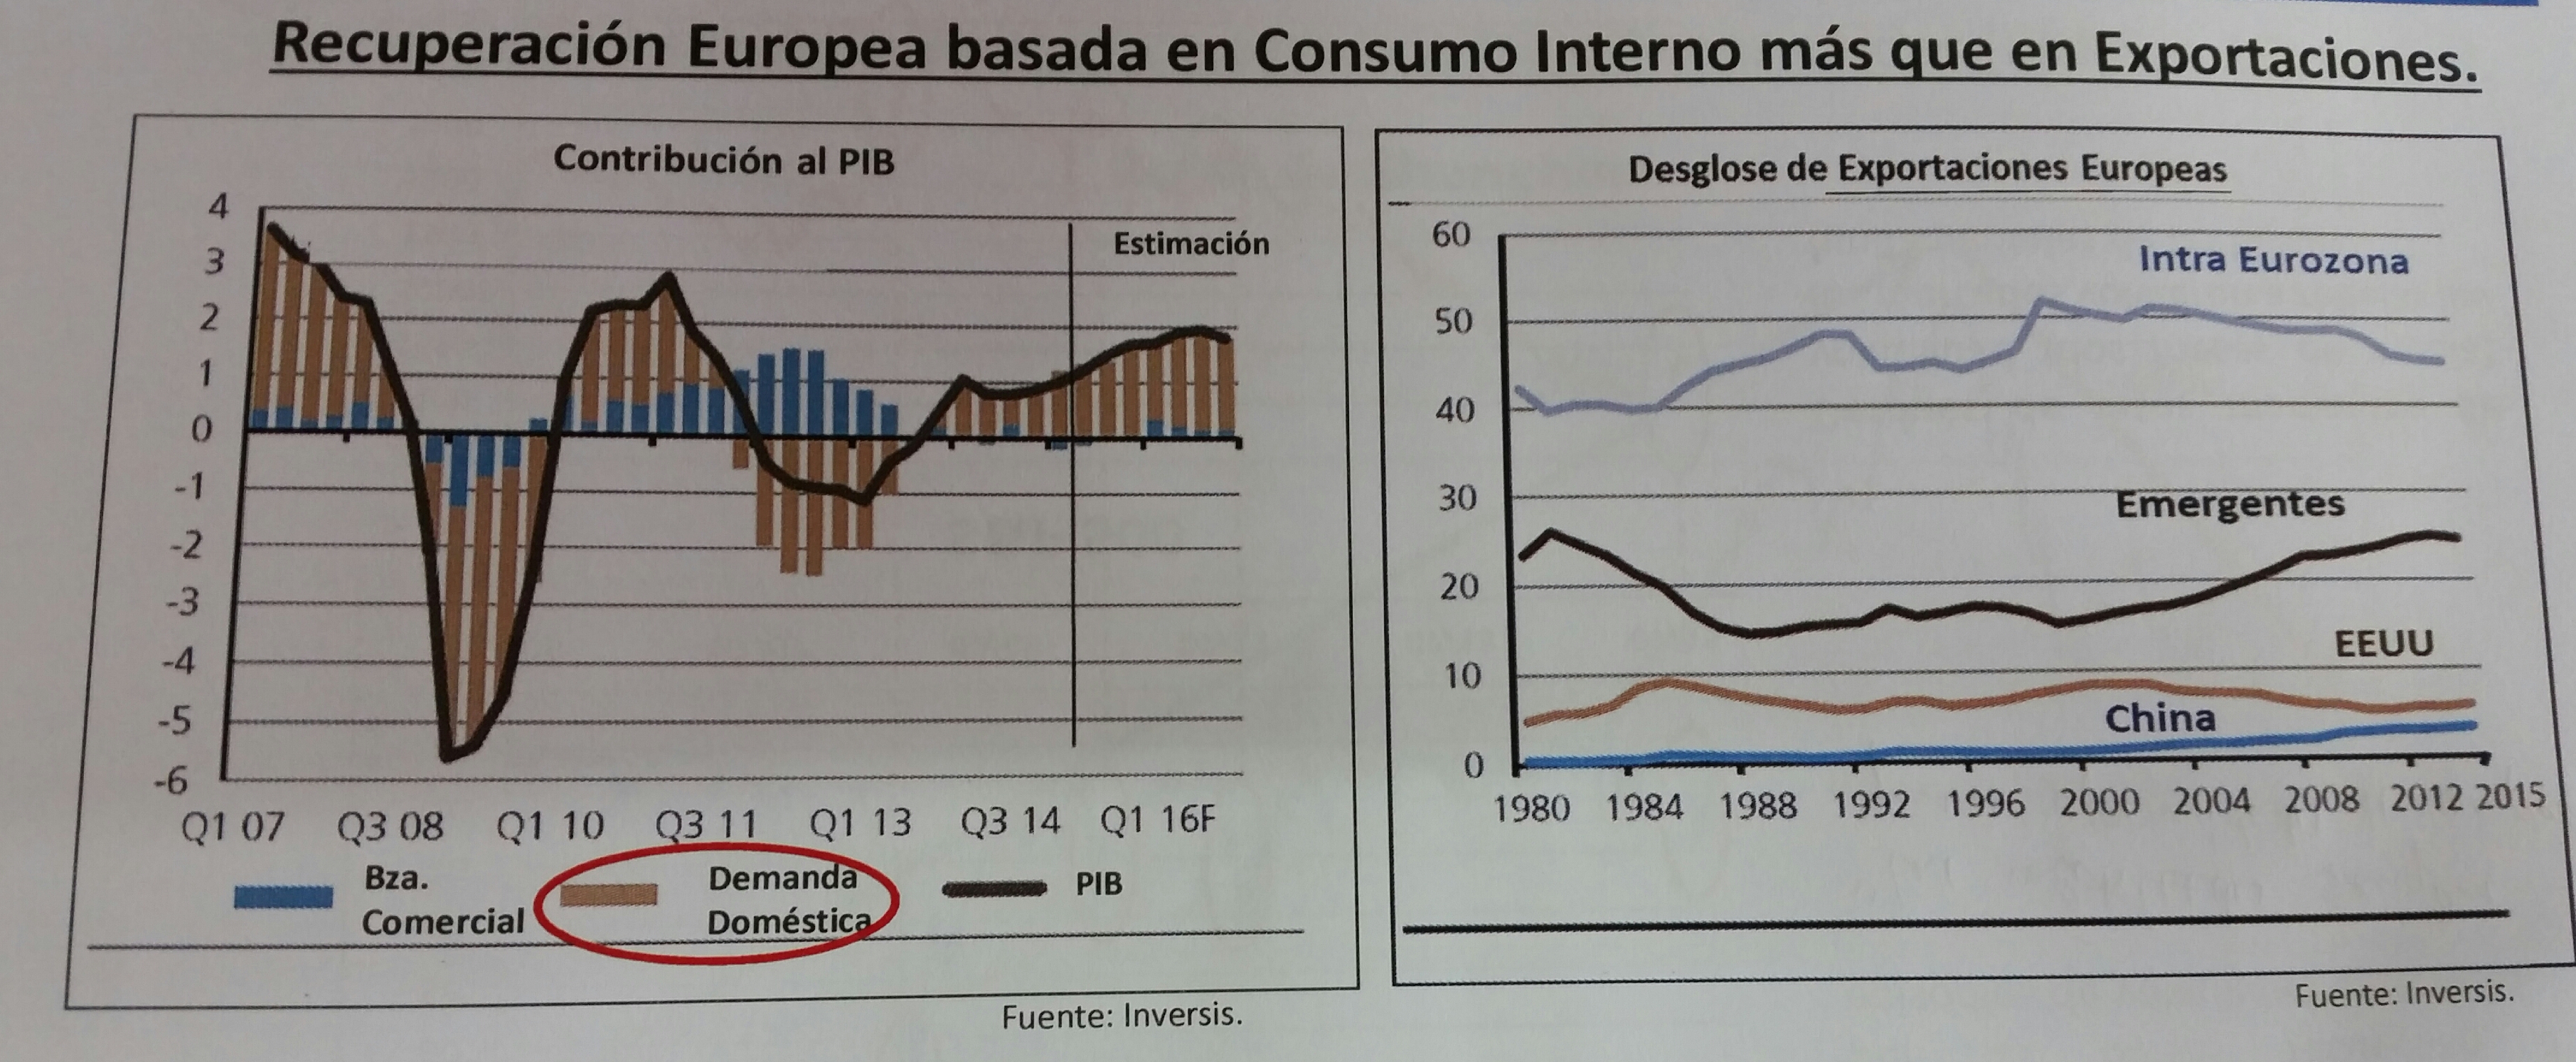 Recuperación Europea basada en consumo interno más que en Exportaciones